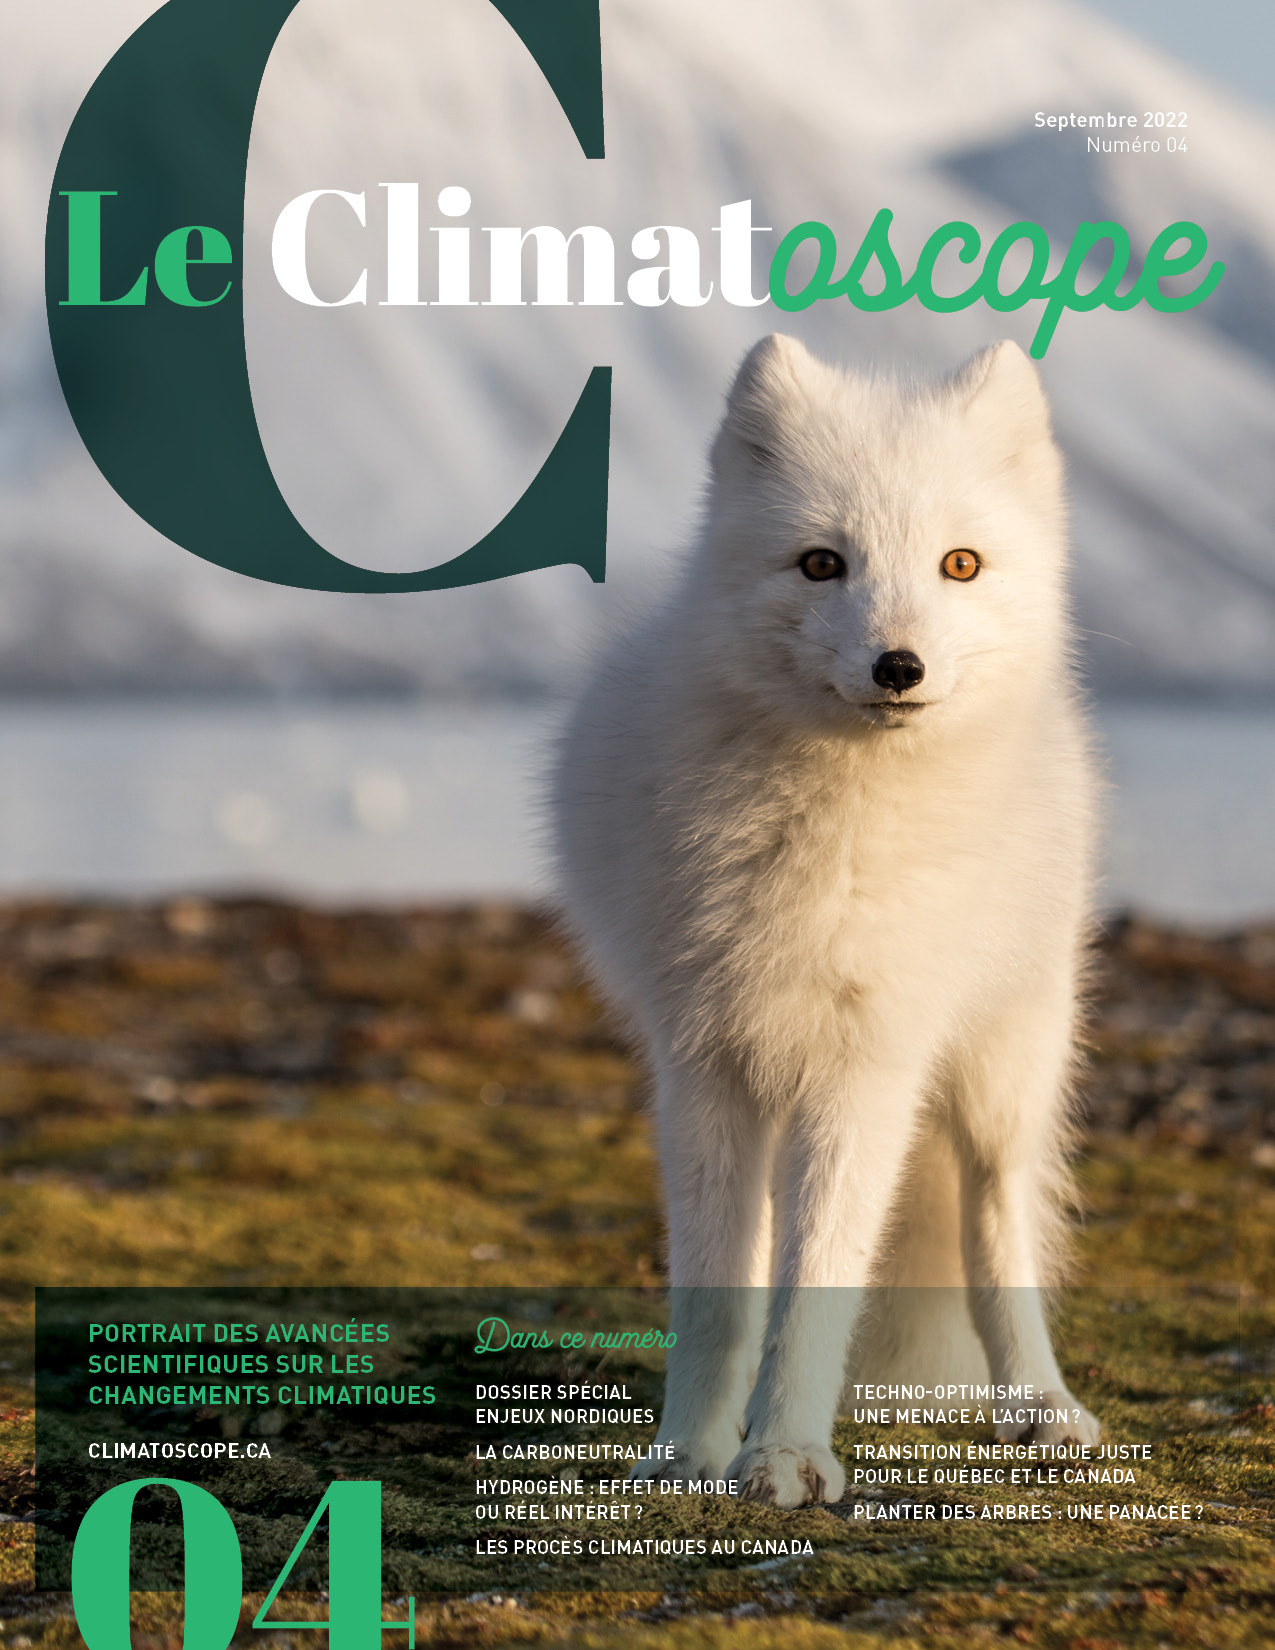 La biodiversité dans la presse écrite québécoise: une construction sociomédiatique complexe